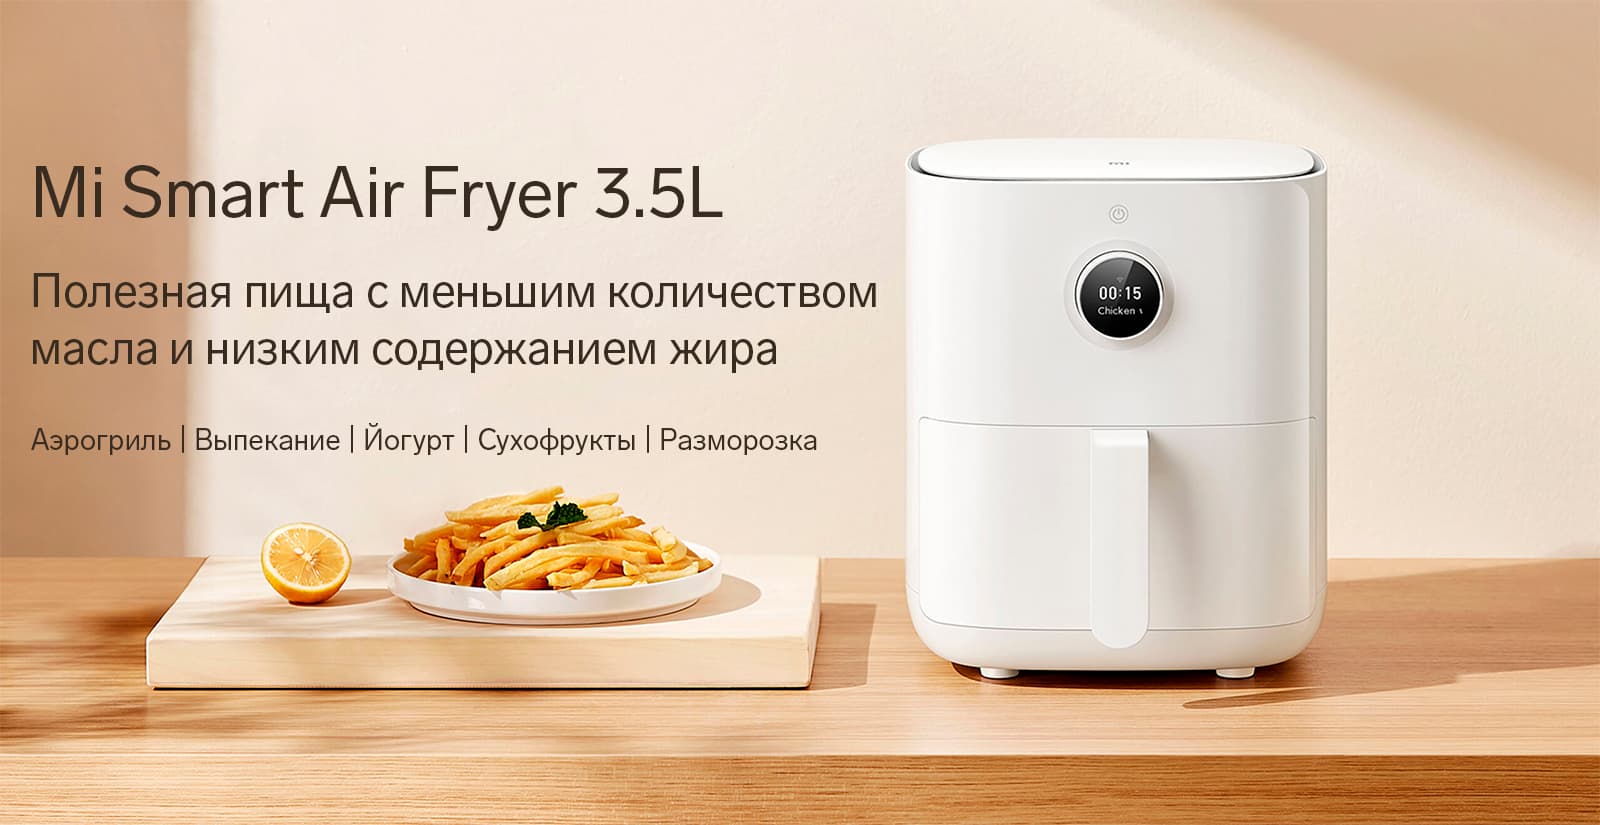 Mi Smart Air Fryer 3.5L